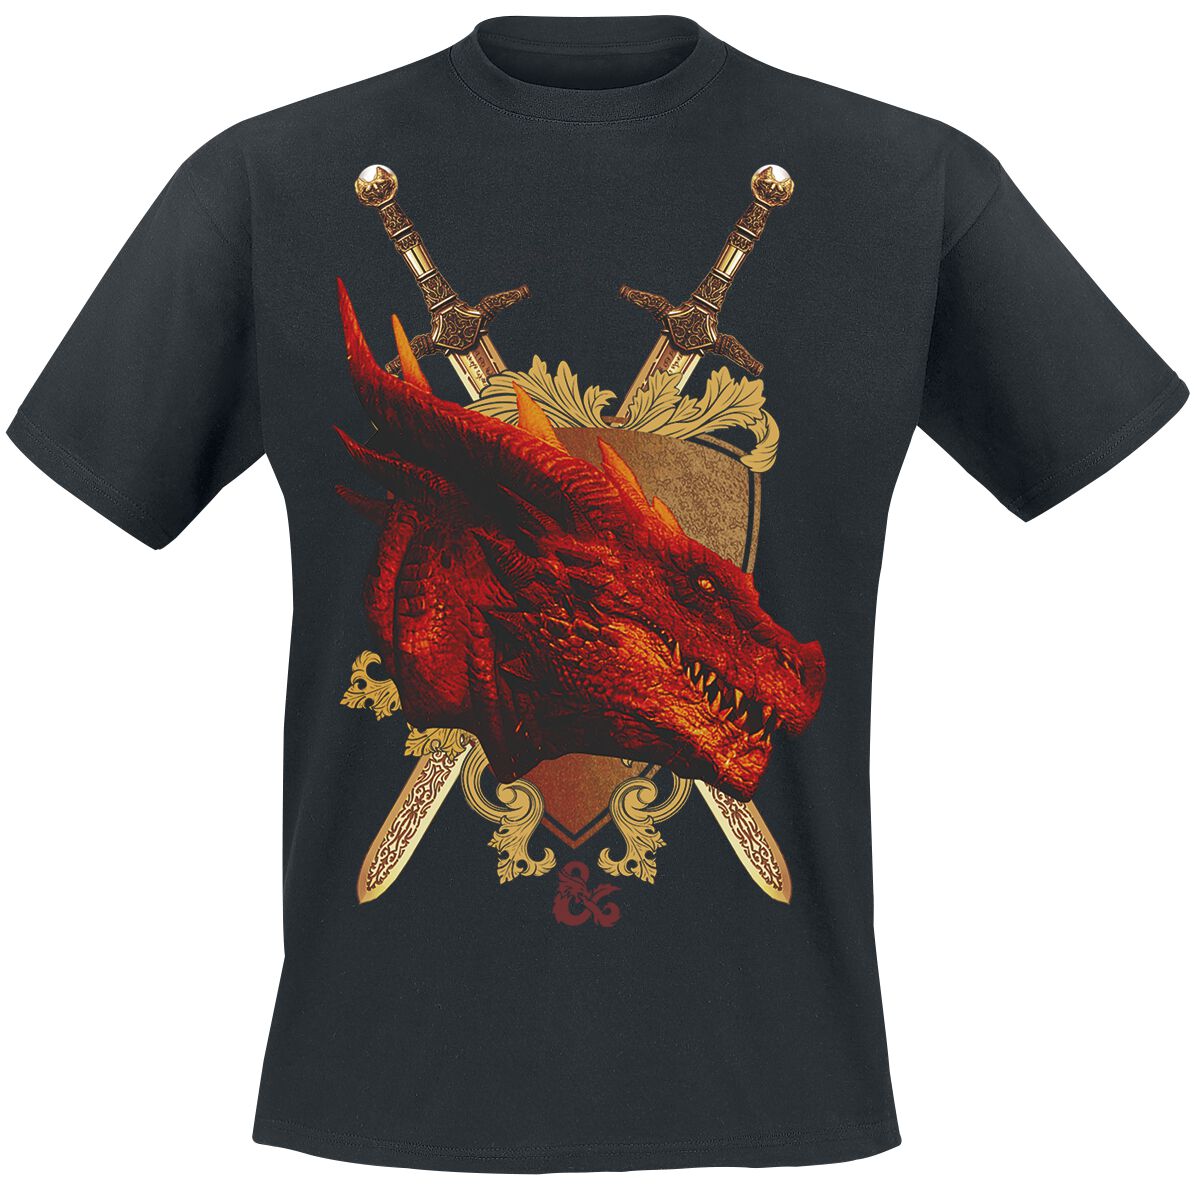 Dungeons and Dragons - Gaming T-Shirt - Honor Among Thieves - Shield - S bis XXL - für Männer - Größe XXL - schwarz  - EMP exklusives Merchandise!